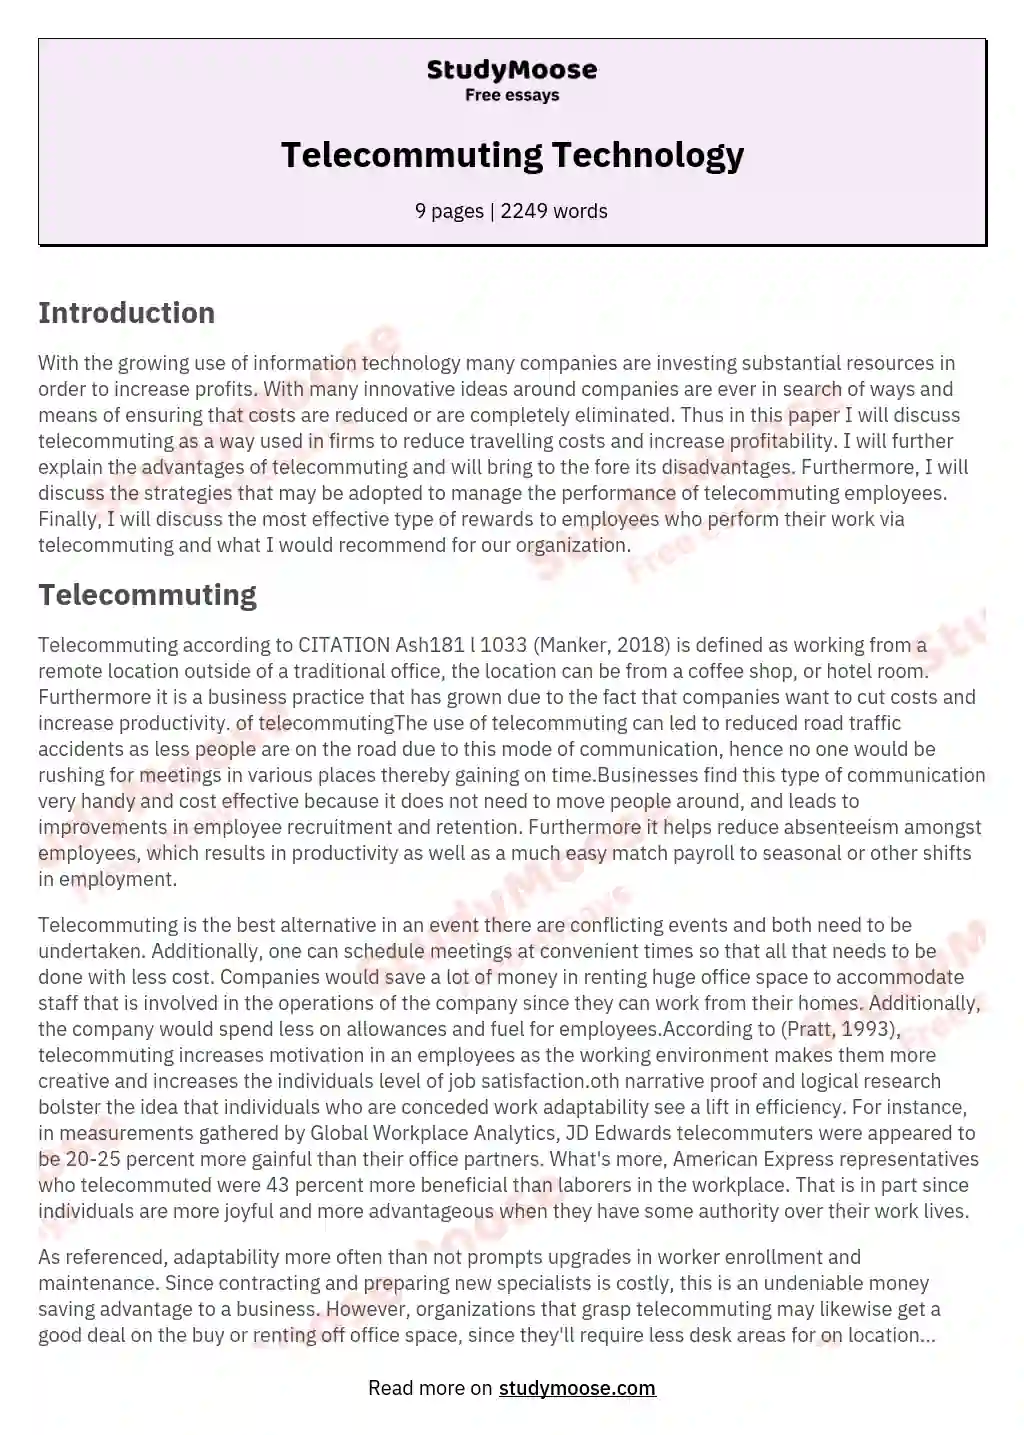 Telecommuting Technology essay